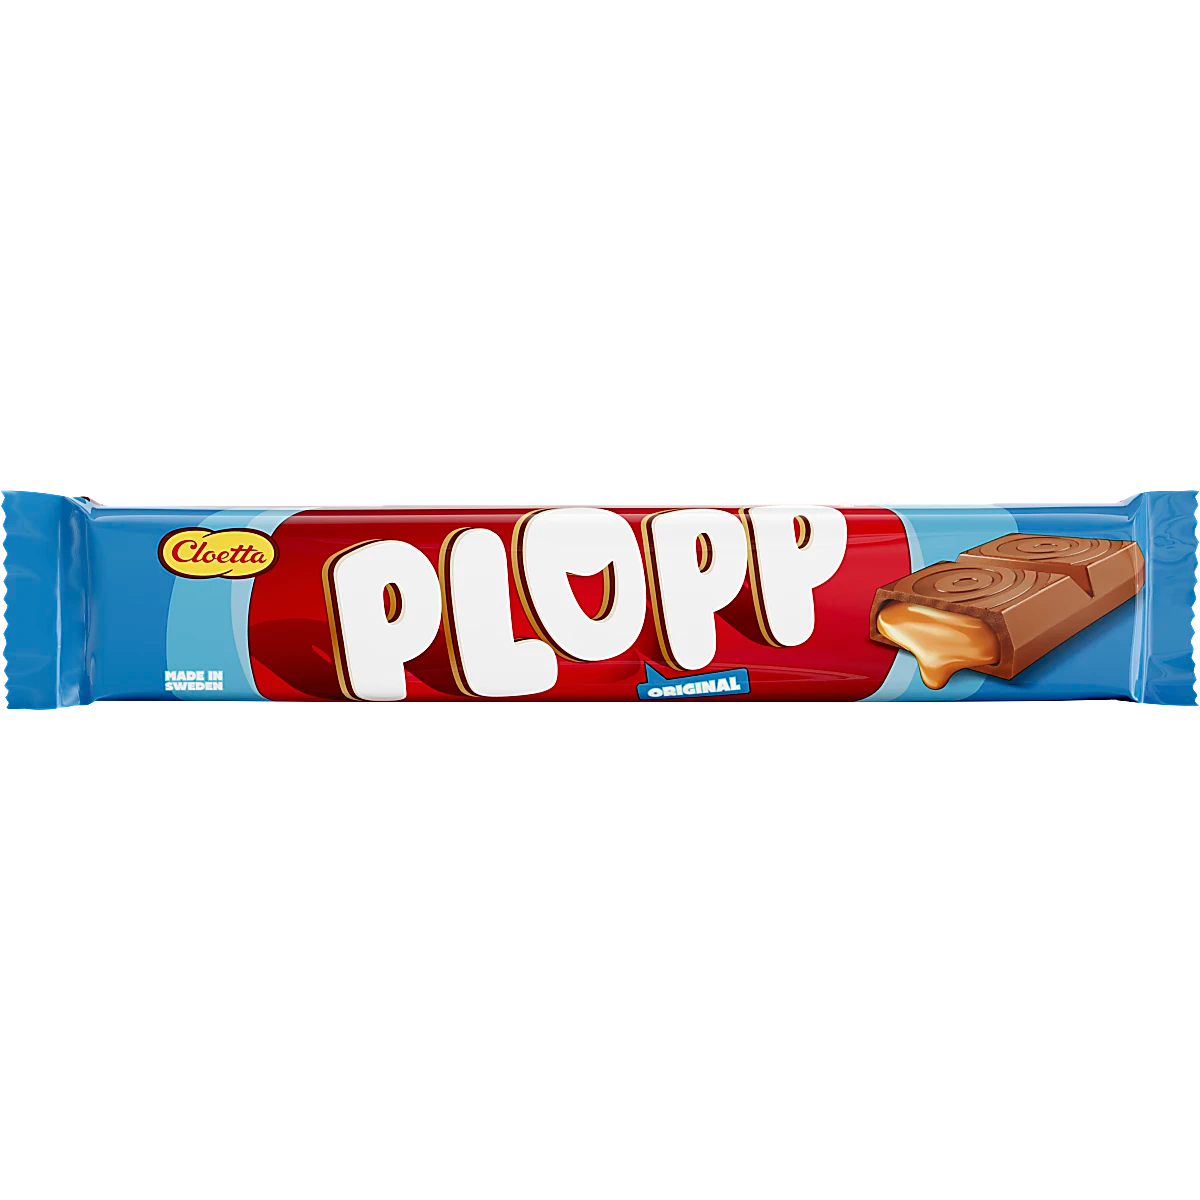 Cloetta Plopp Chocolate Bar by Sweet Side of Sweden